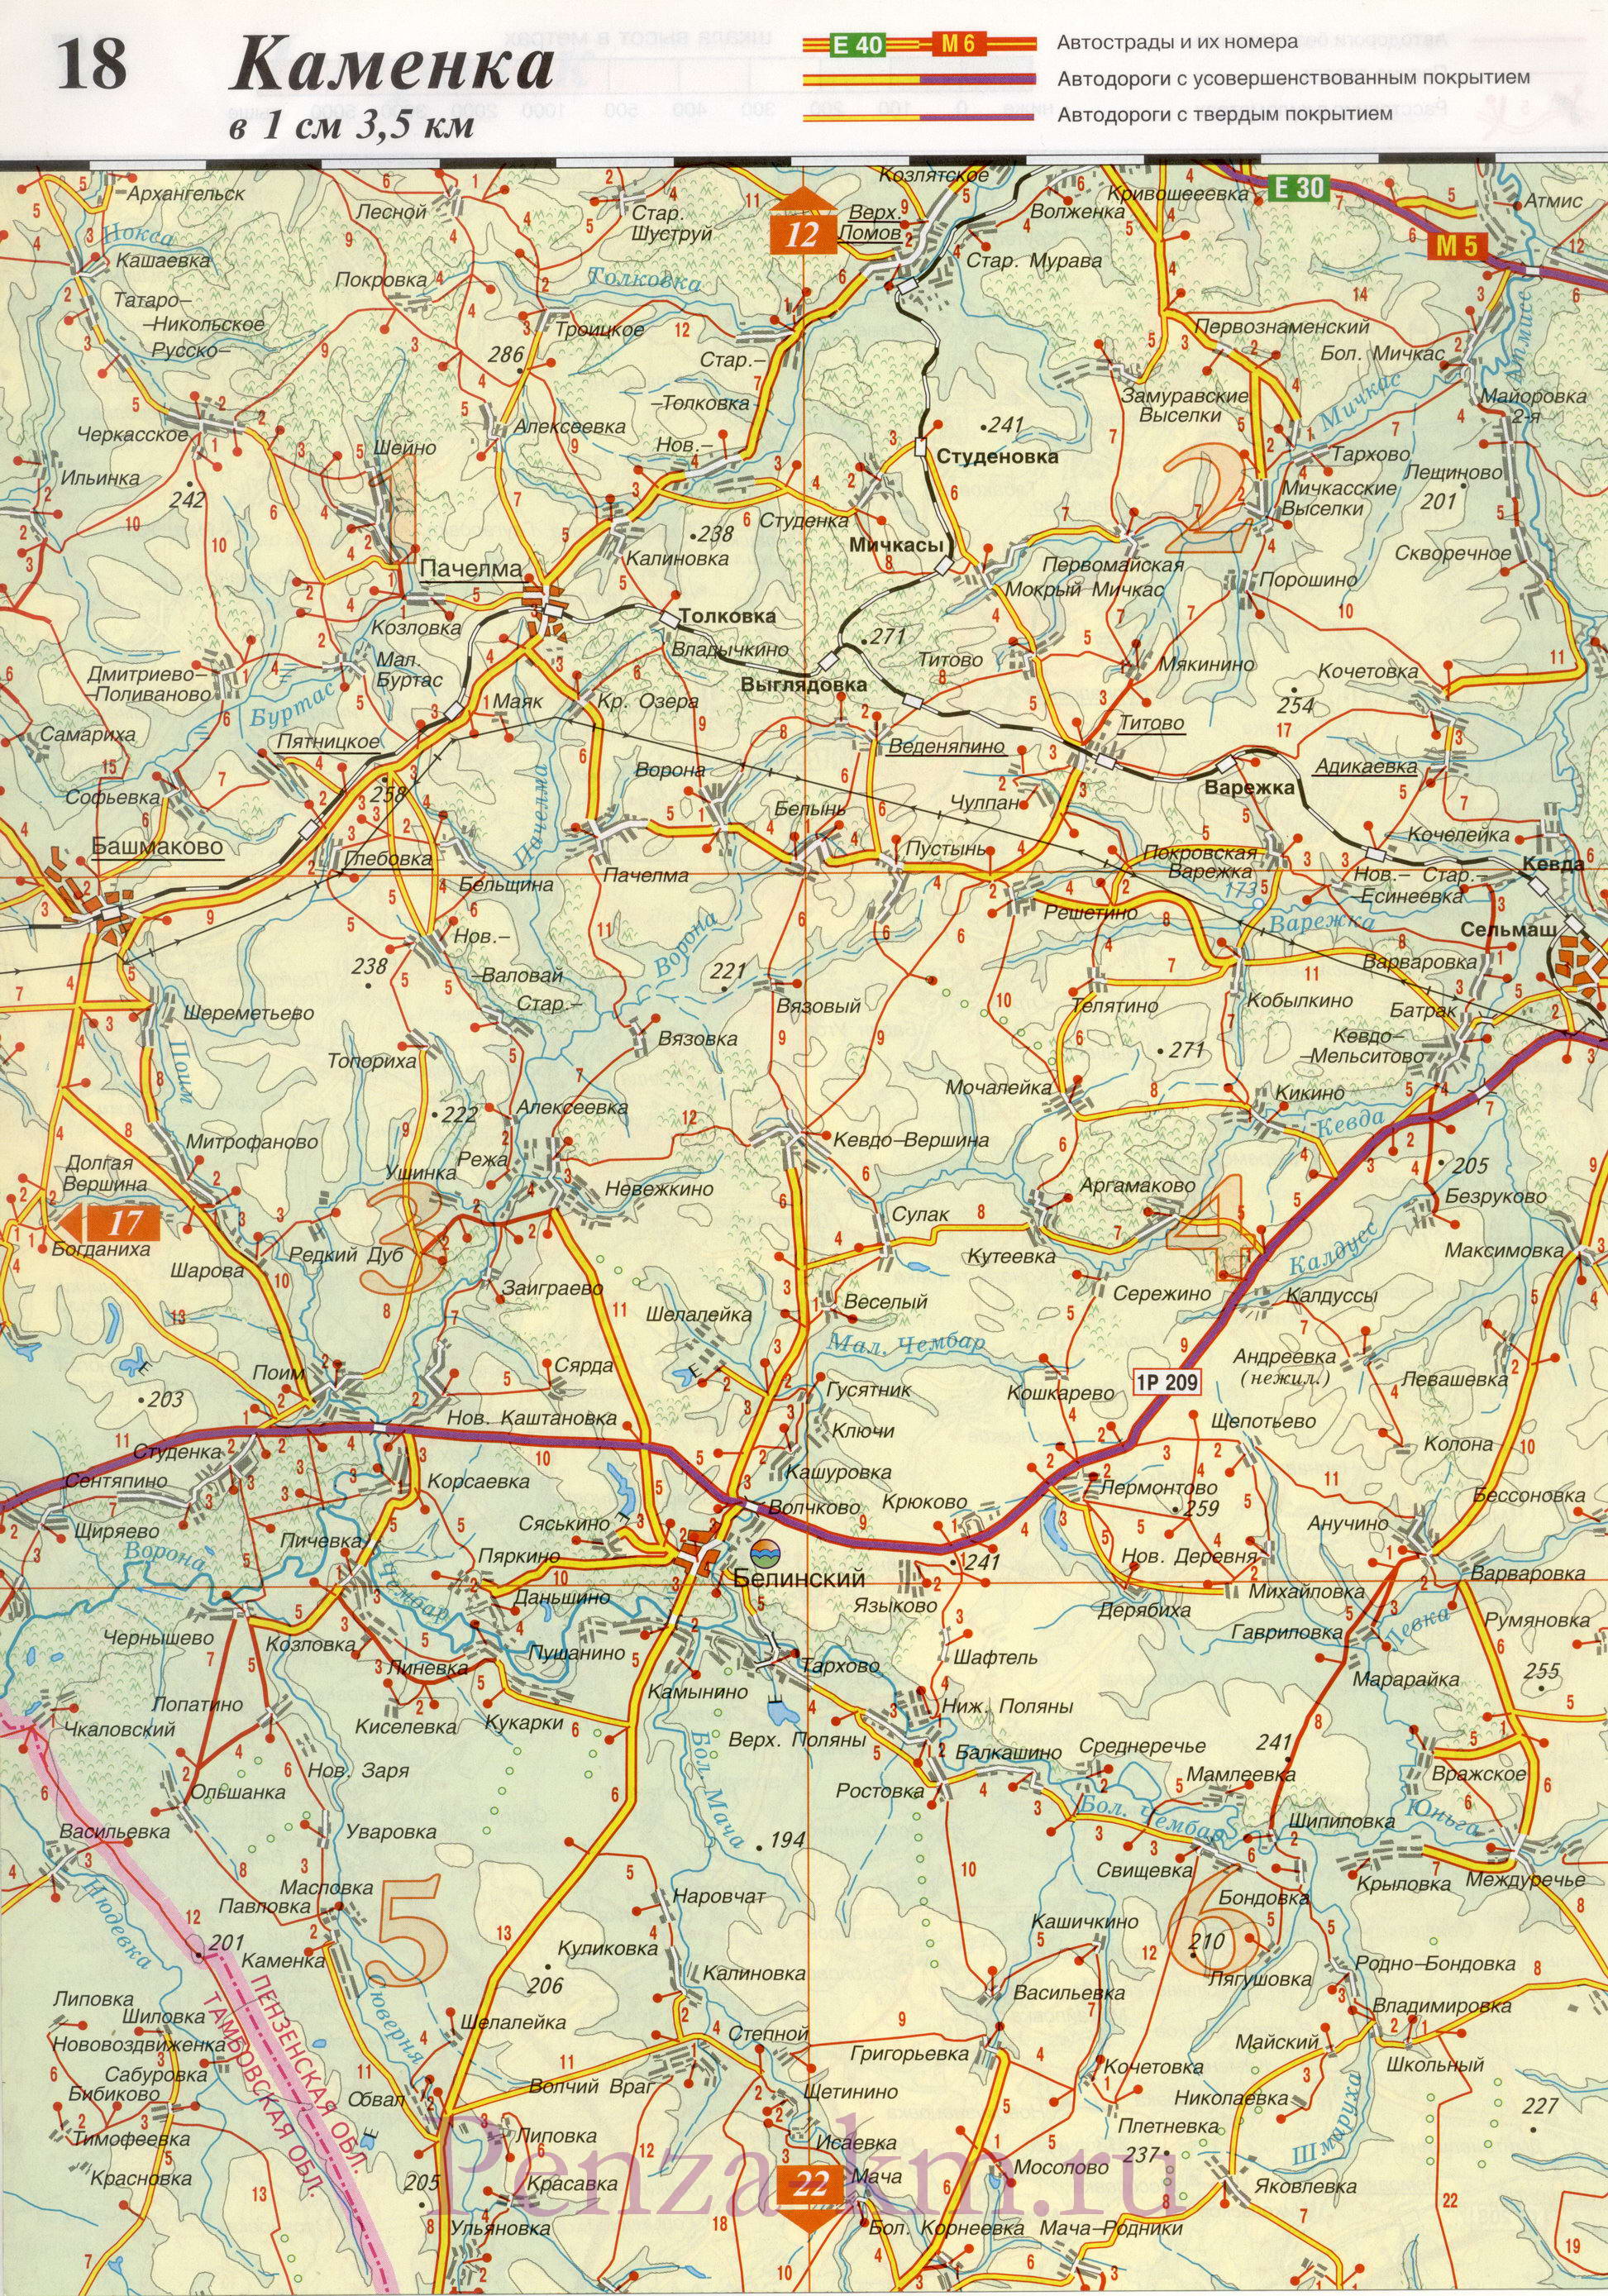  Пензенская область карта дорог. Подробная карта автодорог Пензенской области масштаба 1см:3,5км, B1 - 